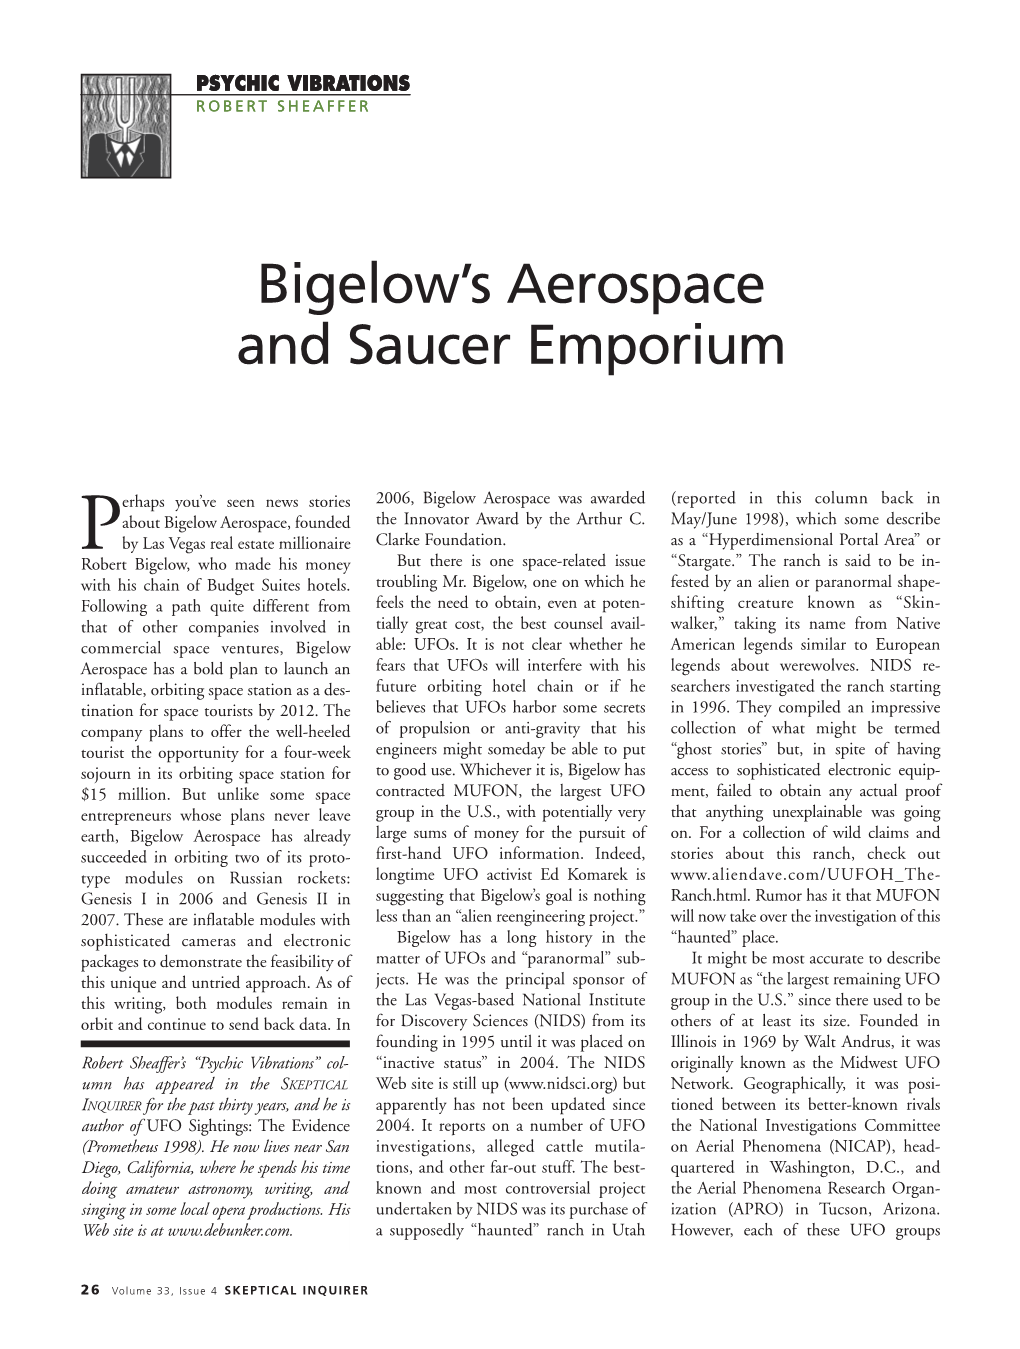 Bigelow's Aerospace and Saucer Emporium